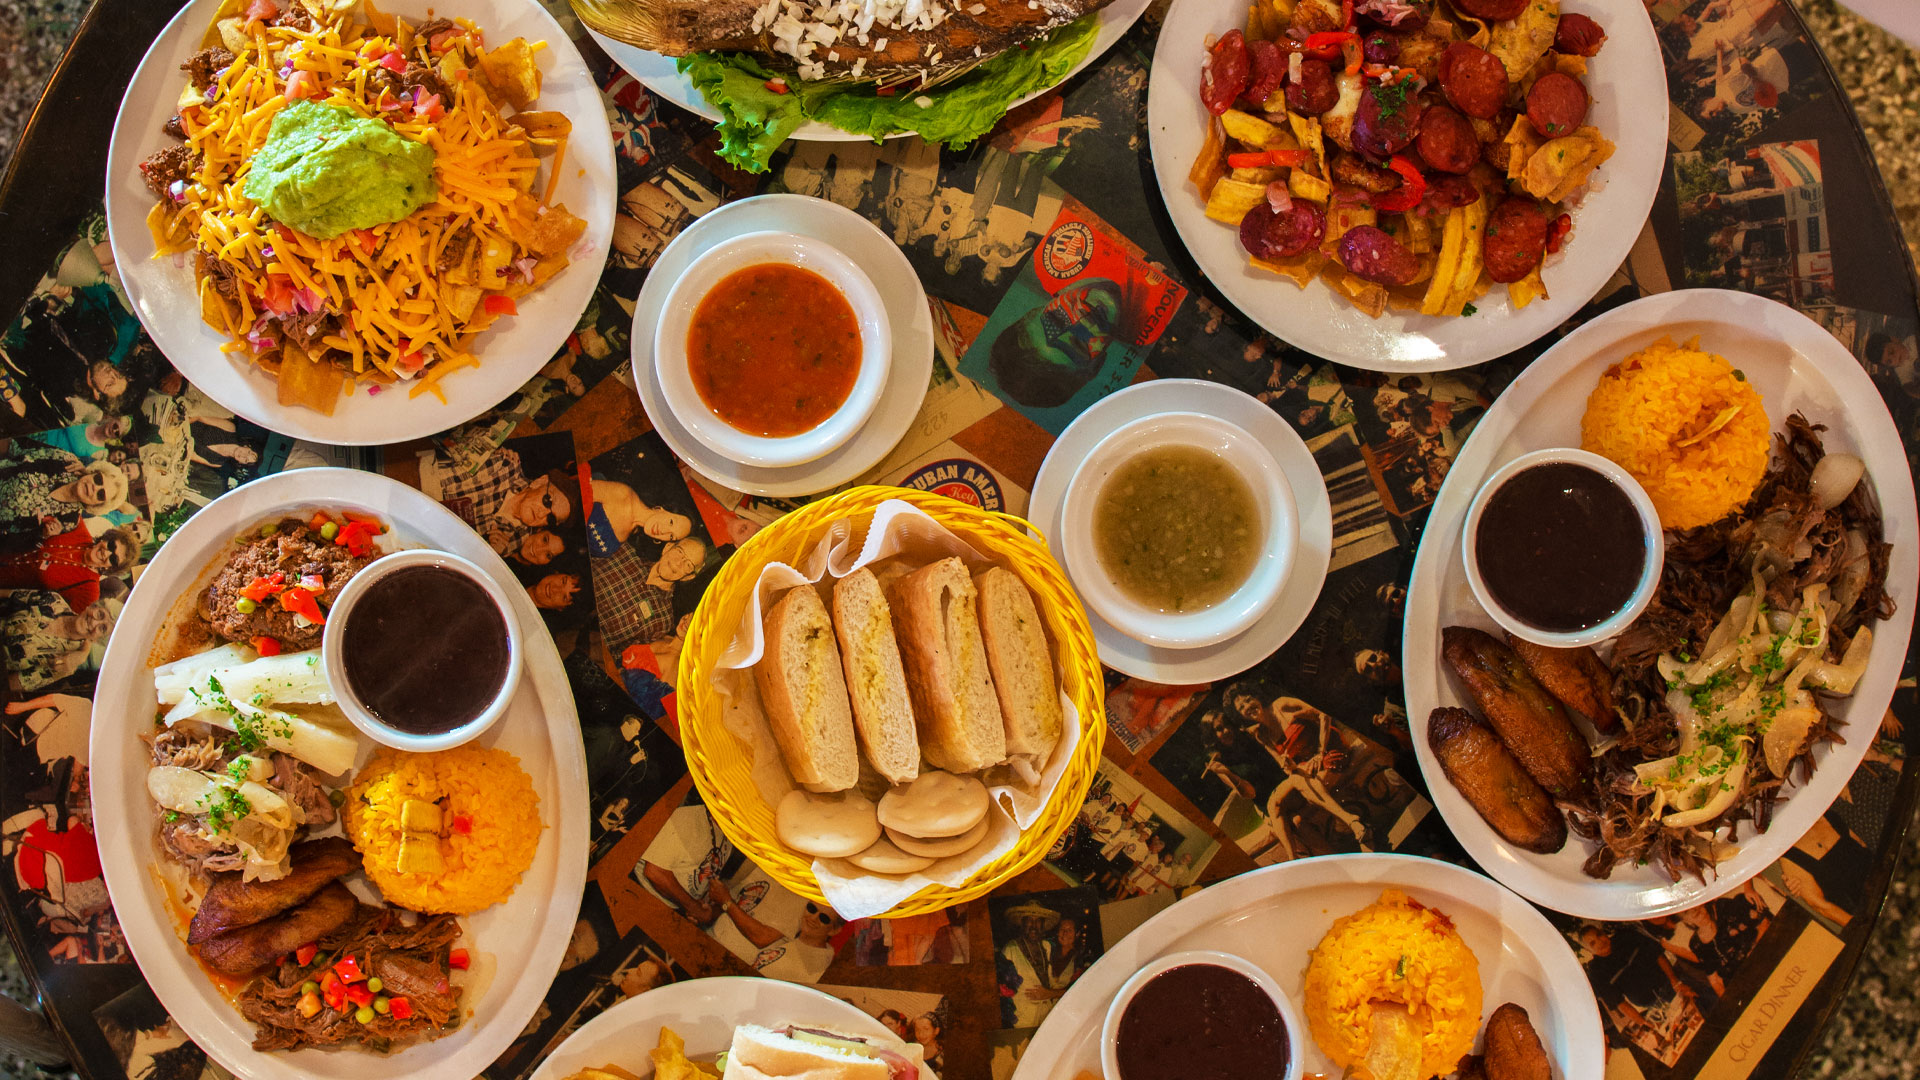 Key West Cuban Food | El Meson de Pepe Restaurant Menu